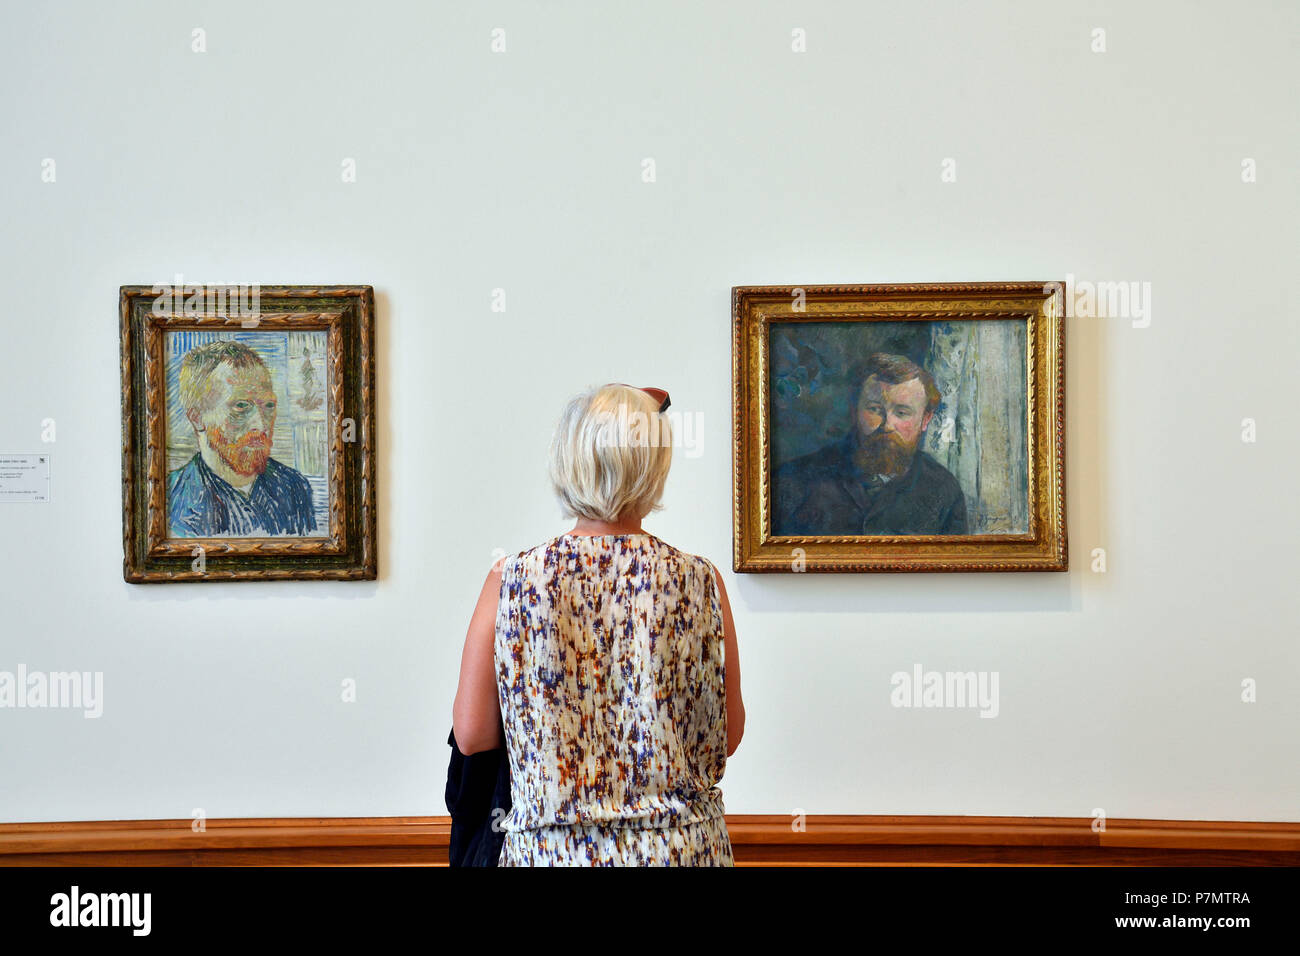 La suisse, Bâle, Musée des beaux-arts Kunstmuseum, Autoportrait avec une impression japonaise de Vincent Van Gogh et Portrait du peintre Joseph Franchi-Taylor de Paul Gauguin Banque D'Images